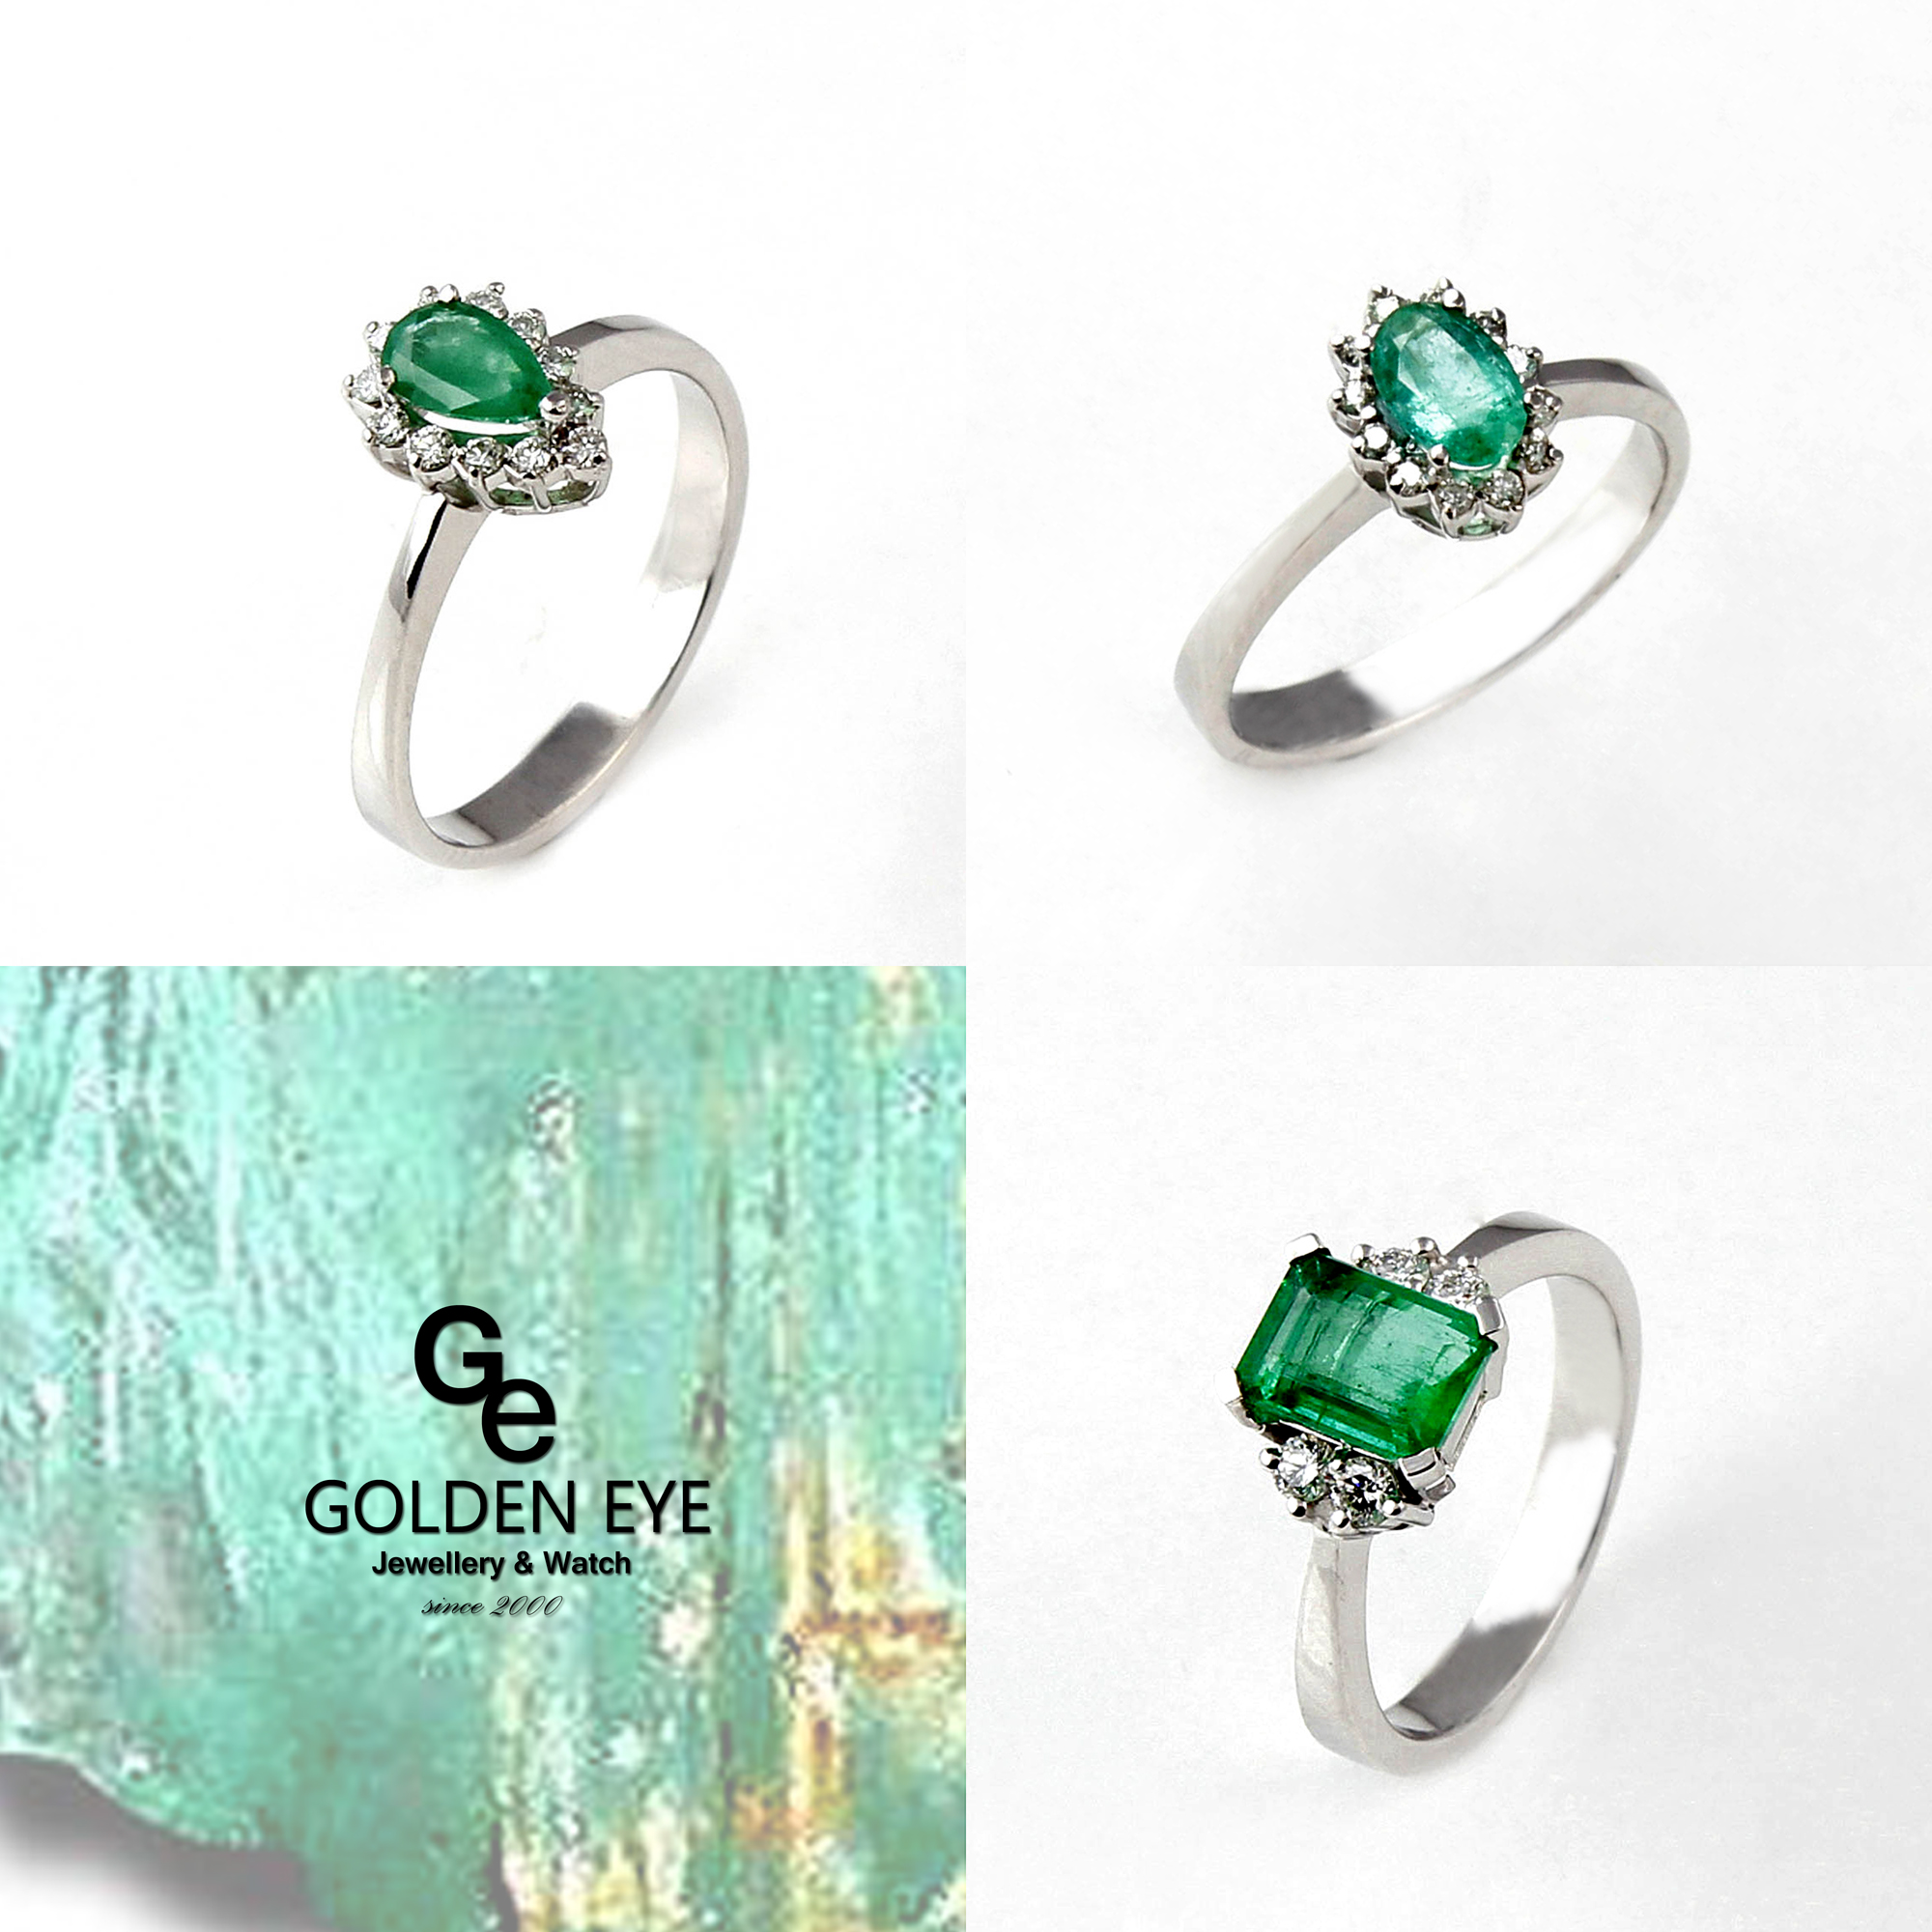 R034A hvid guld Ring med Emerald og diamanter